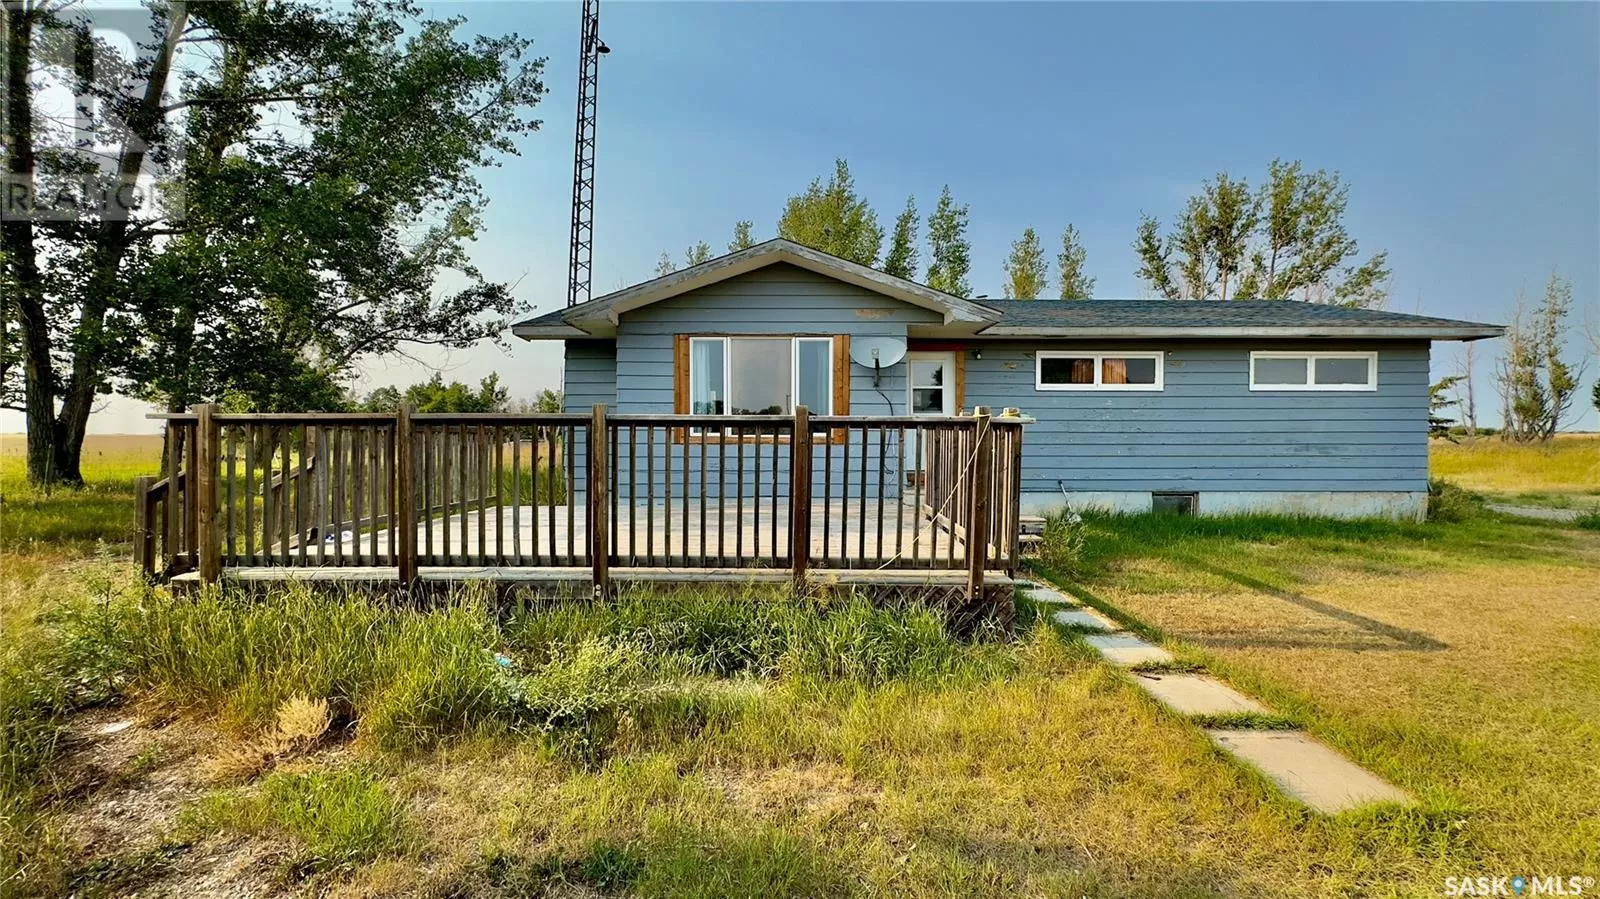 House for rent: Rm Of Mccraney Acreage, Mccraney Rm No. 282, Saskatchewan S0G 1A0